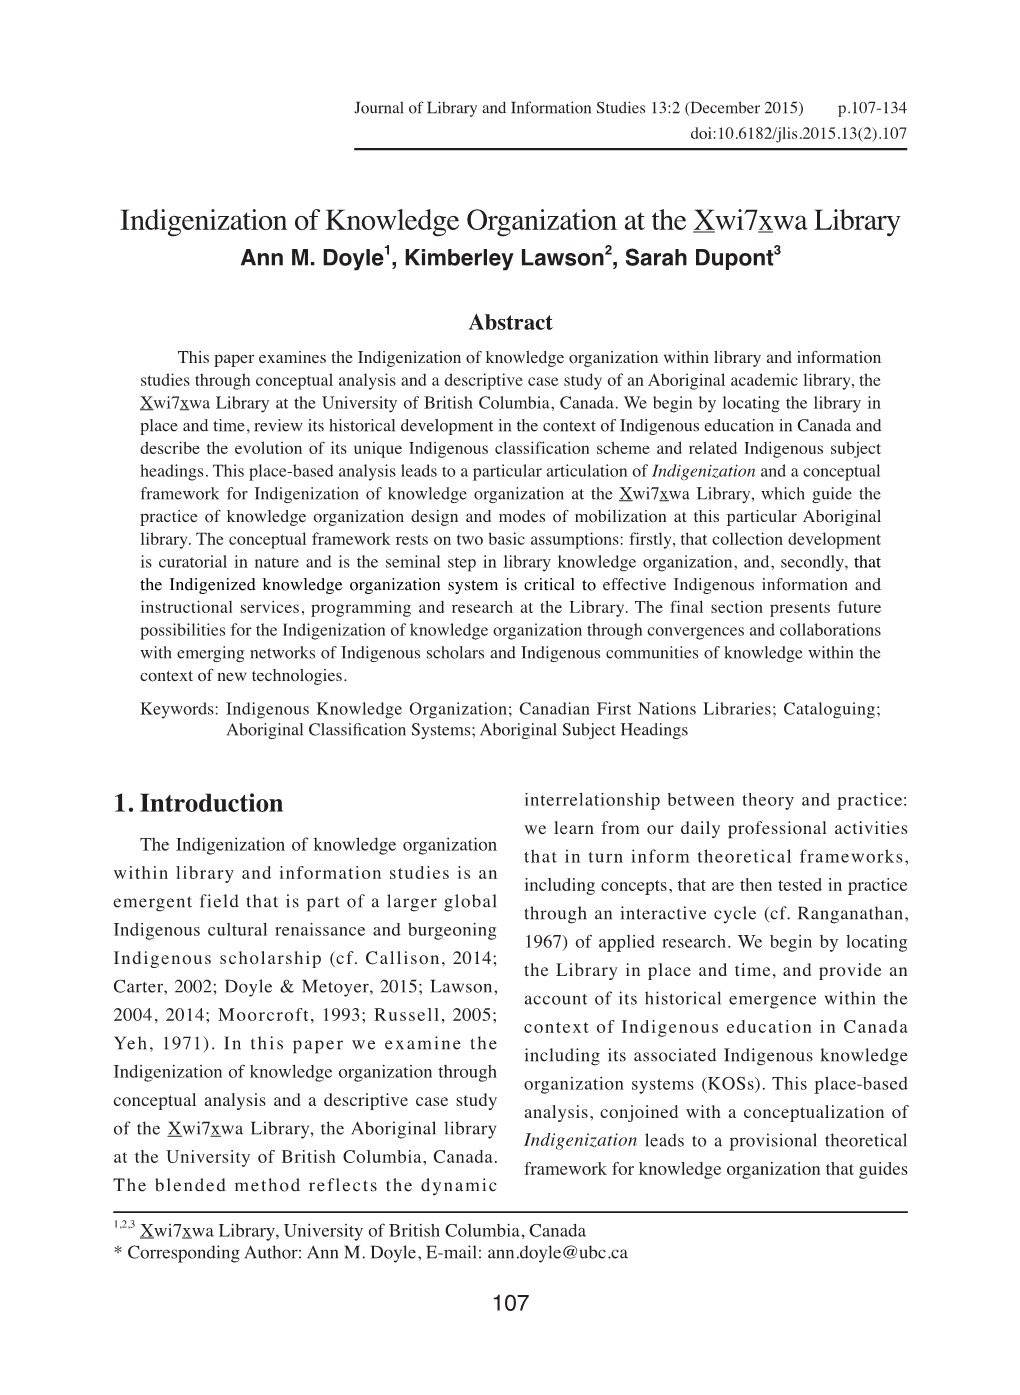 加拿大xwi7xwa圖書館之知識組織在地化 Indigenization of Knowledge Organization at the Xwi7xwa Library Ann M